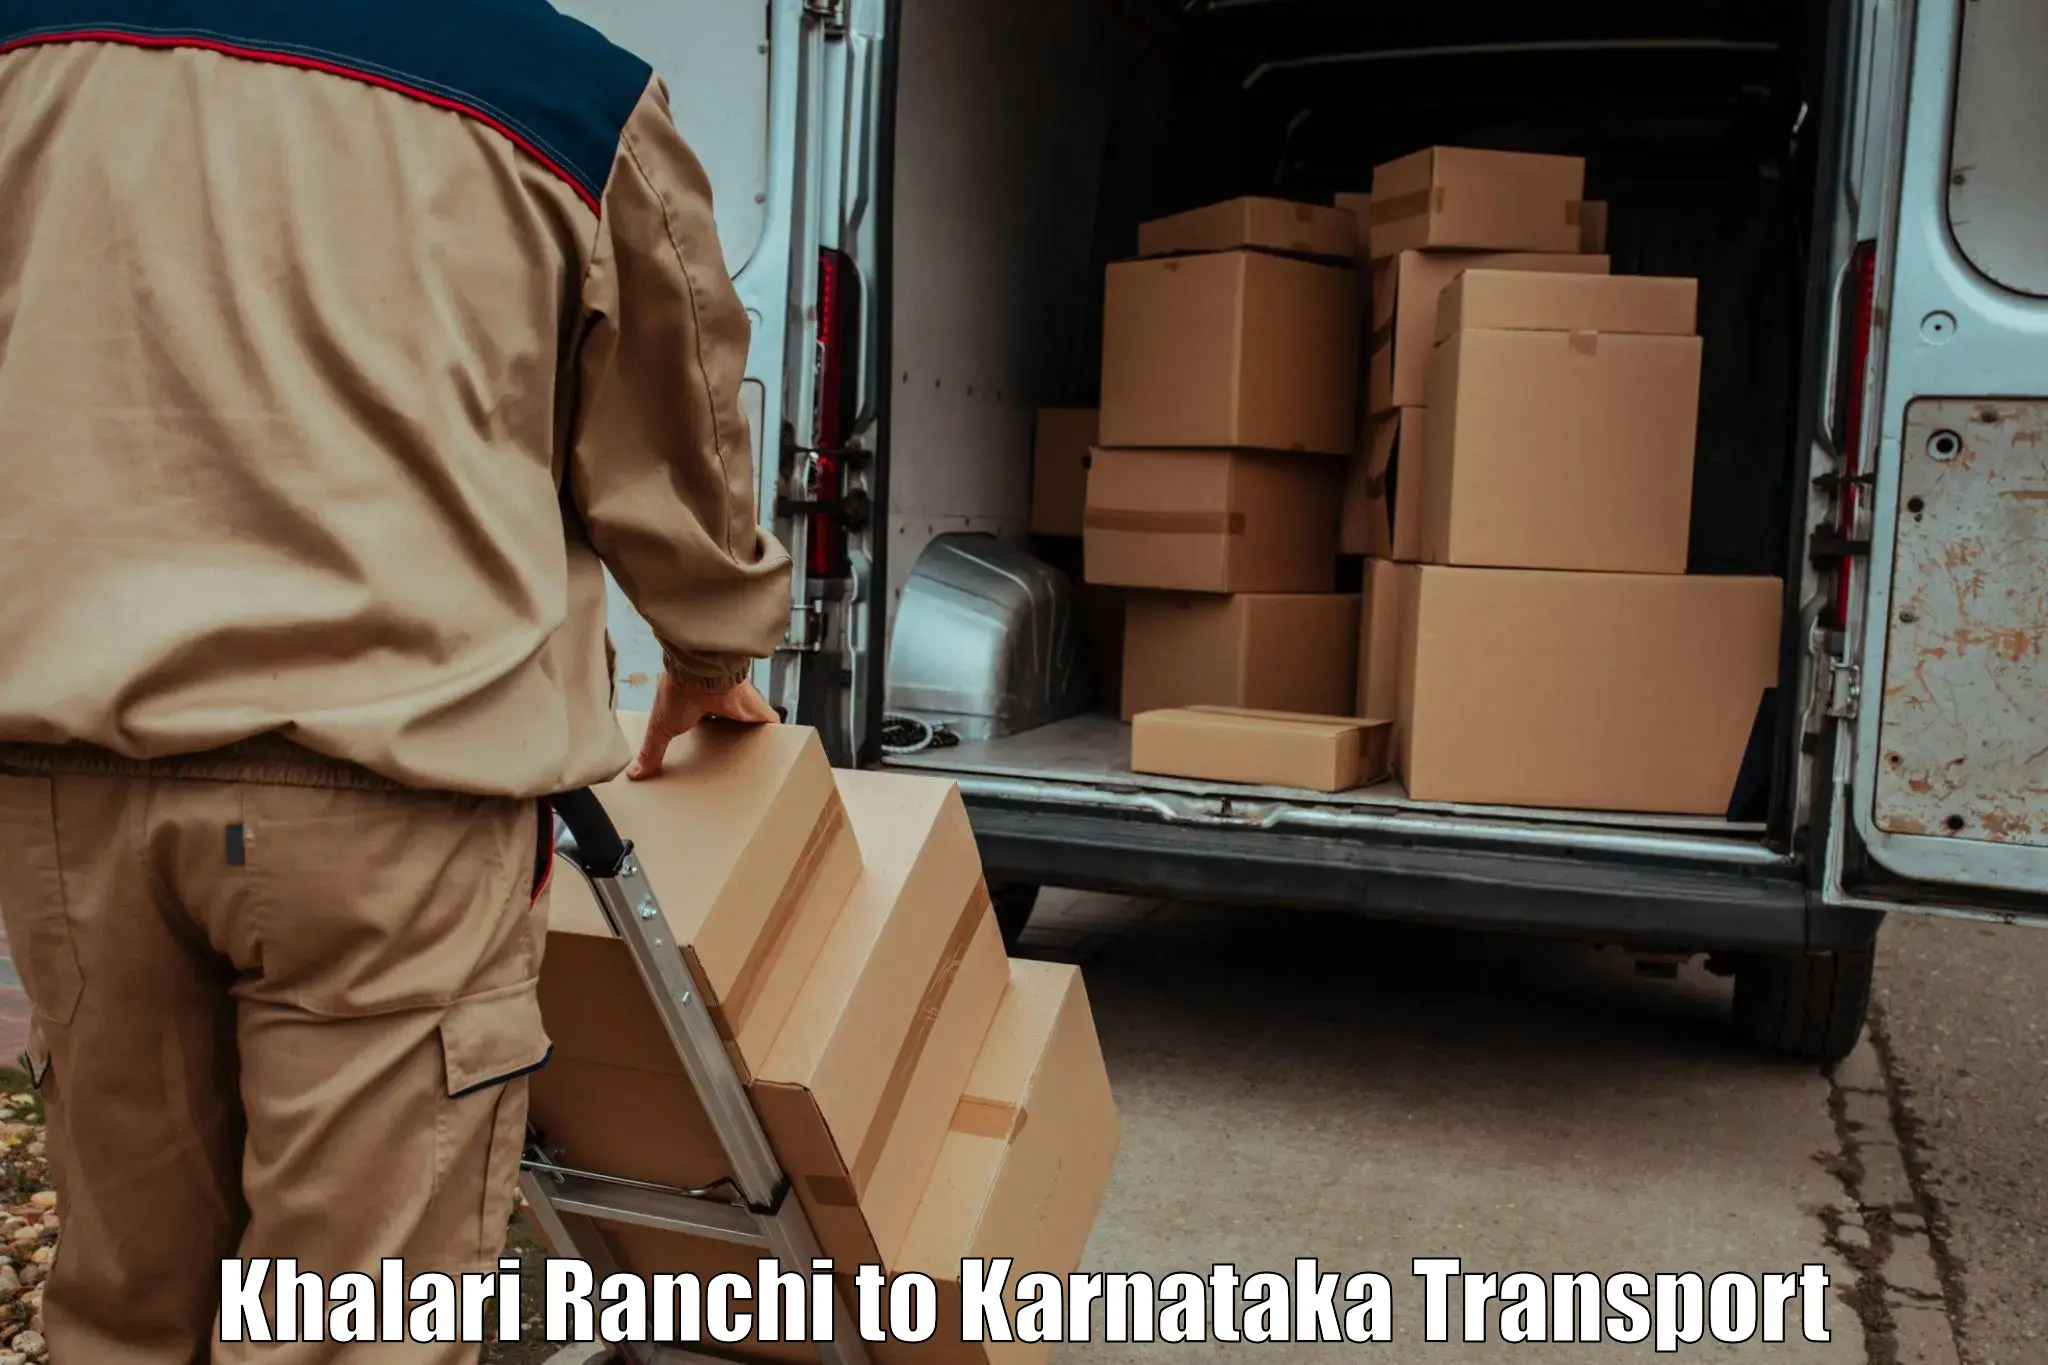 Cargo transportation services Khalari Ranchi to Yenepoya Mangalore